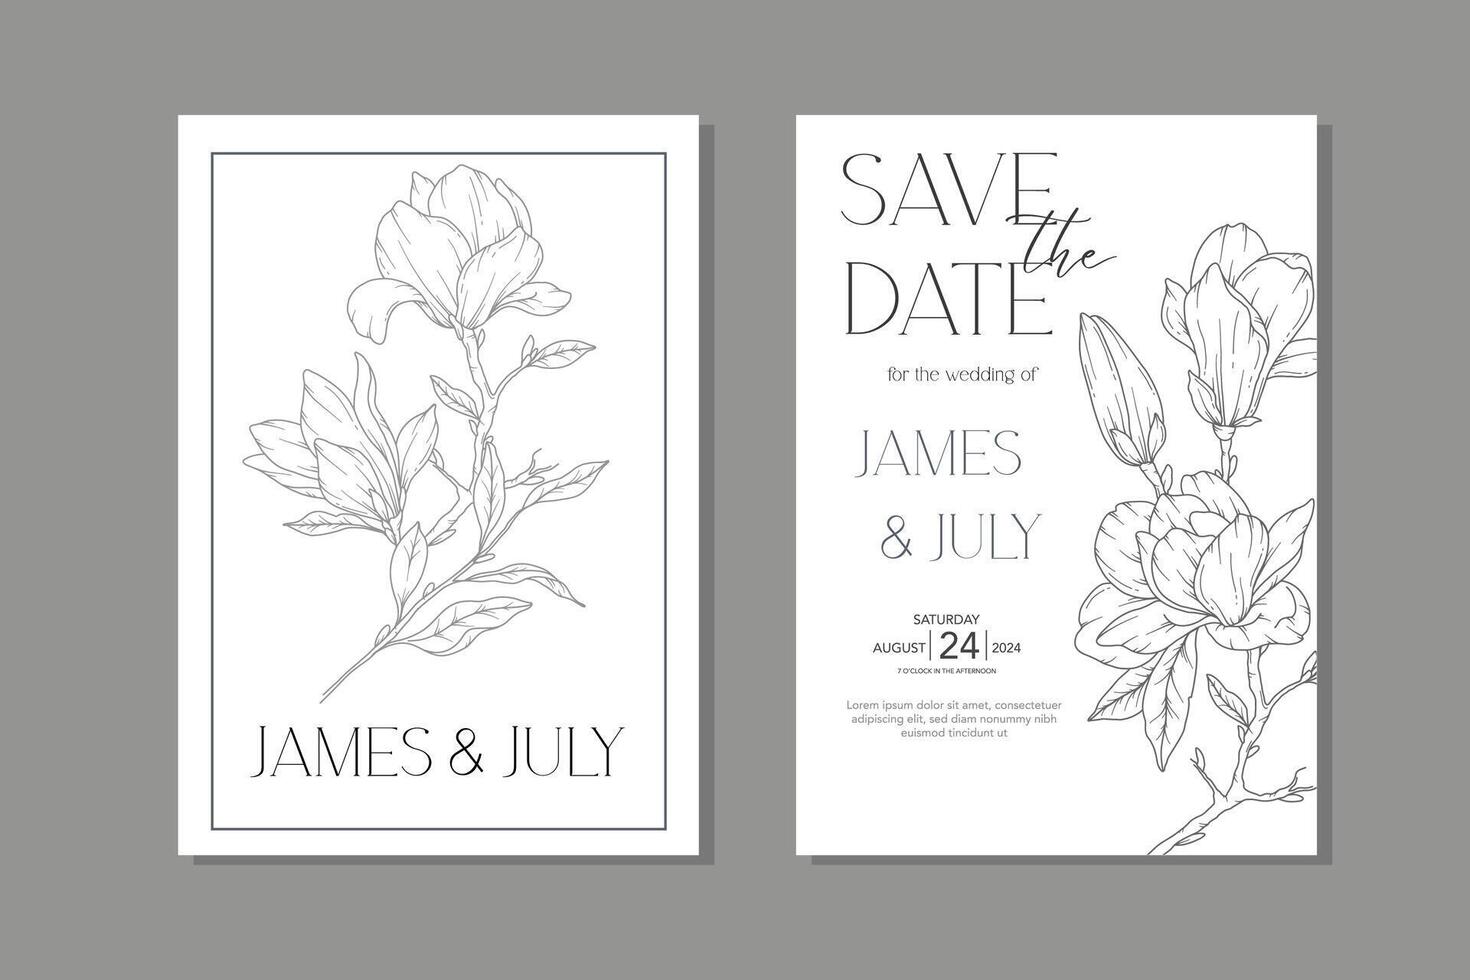 linje konst magnolia bröllop inbjudan mall, översikt magnolia minimalistisk bröllop brevpapper vektor